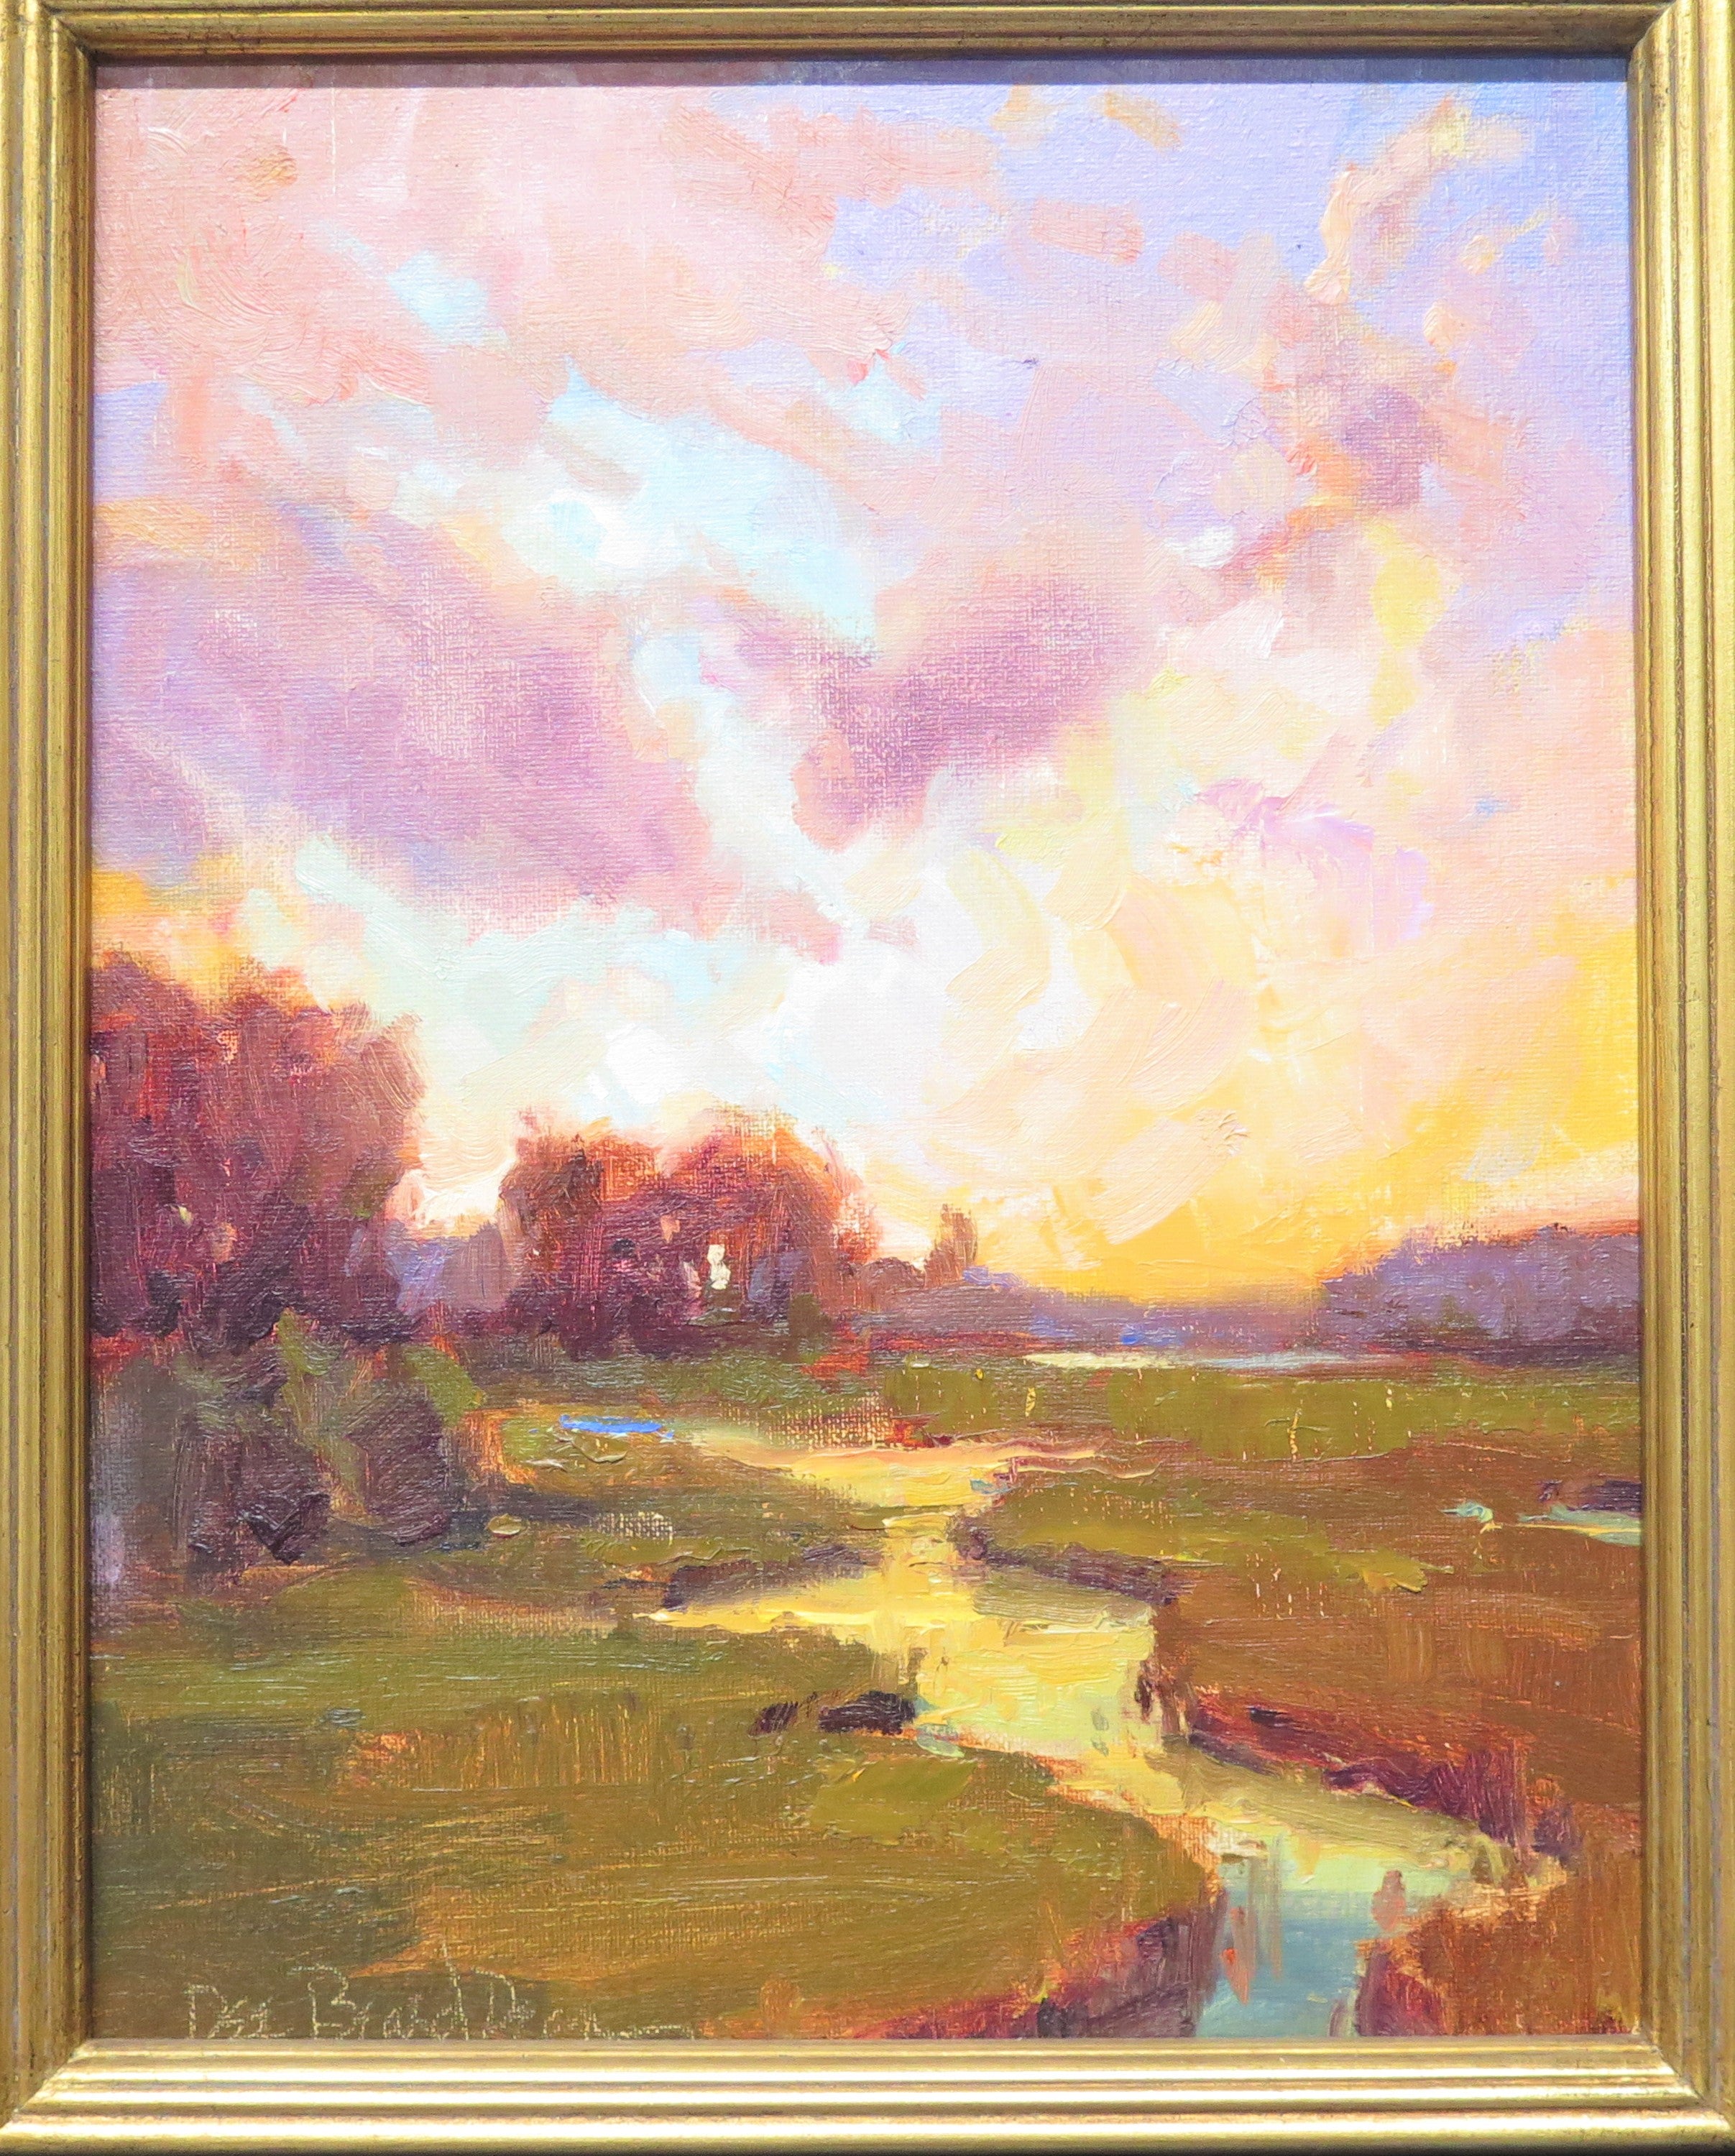 "Sunset Landscape'' by American Artist Dee Beard Dean